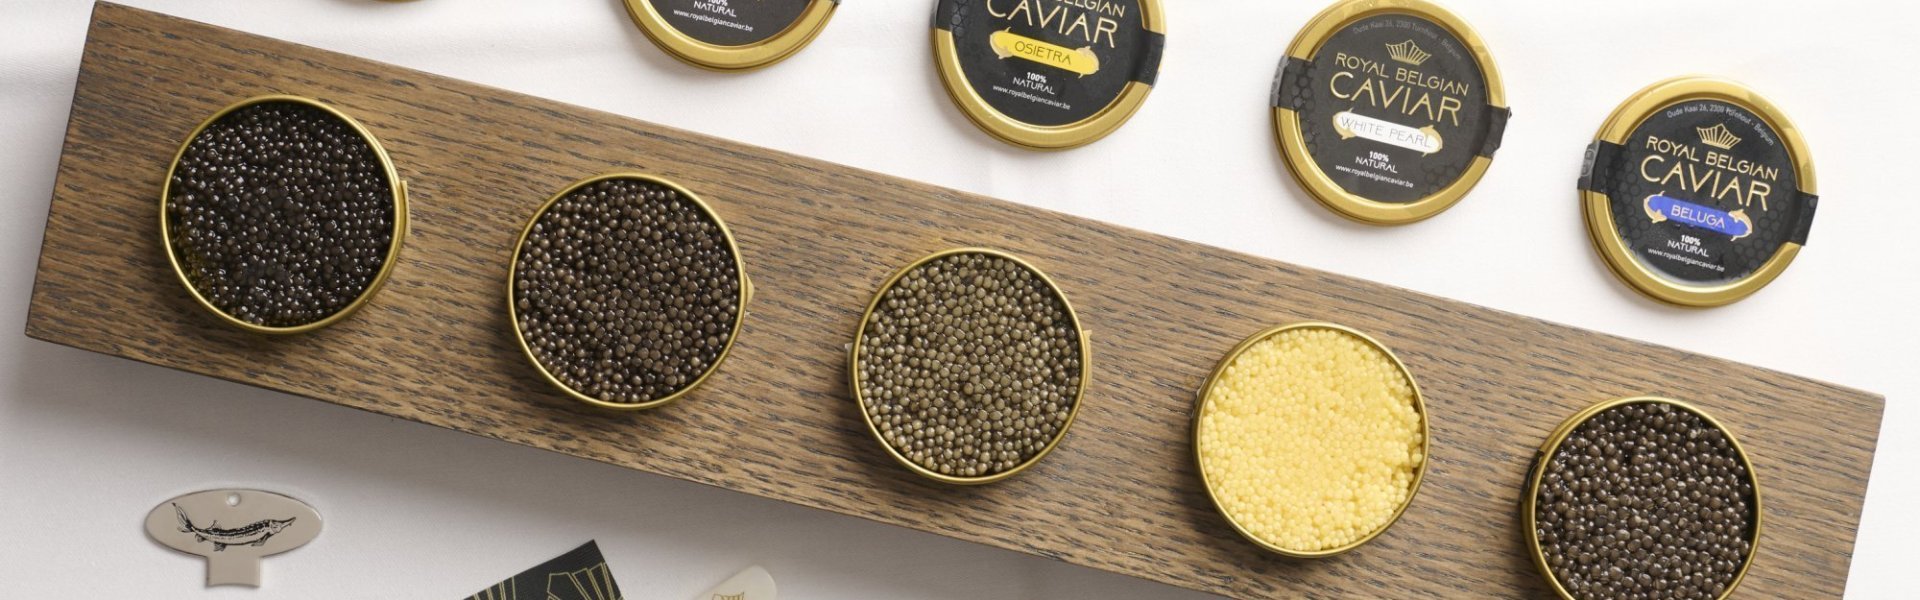 Royal belgian caviar - smaken